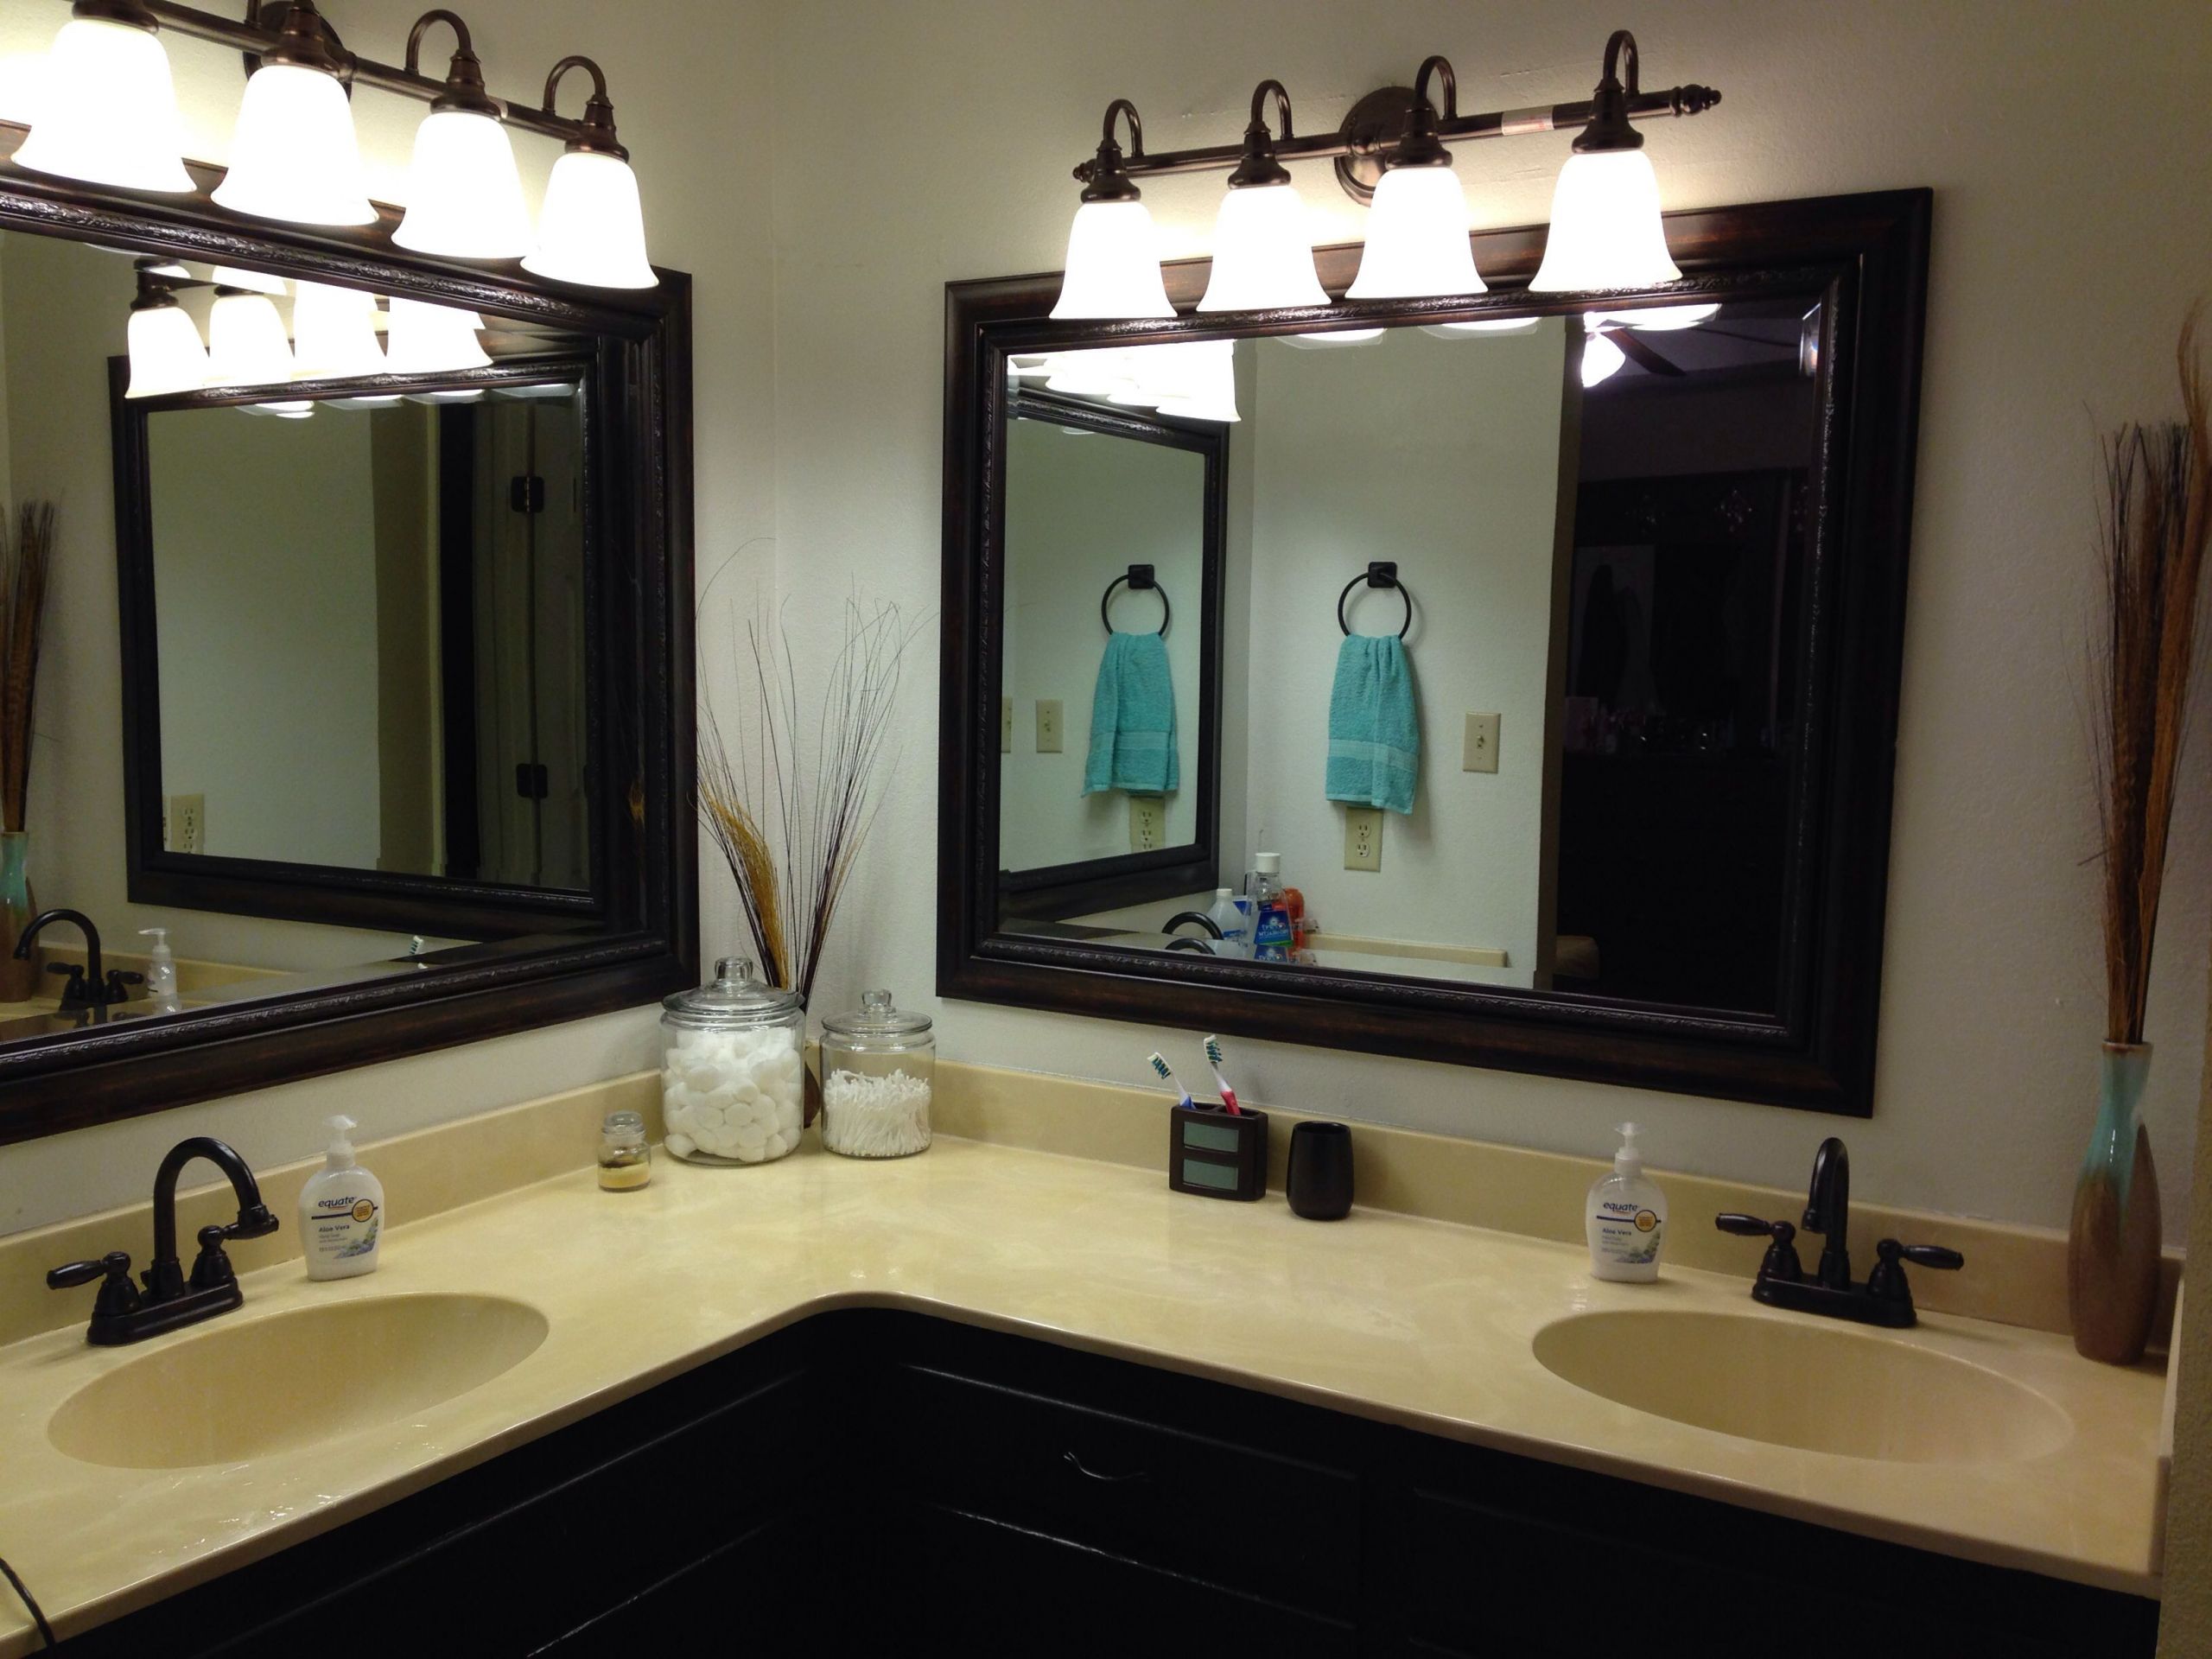 Kirkland Bathroom Vanities
 Brown and teal Bathroom vanity Kirklands mirrors Painted